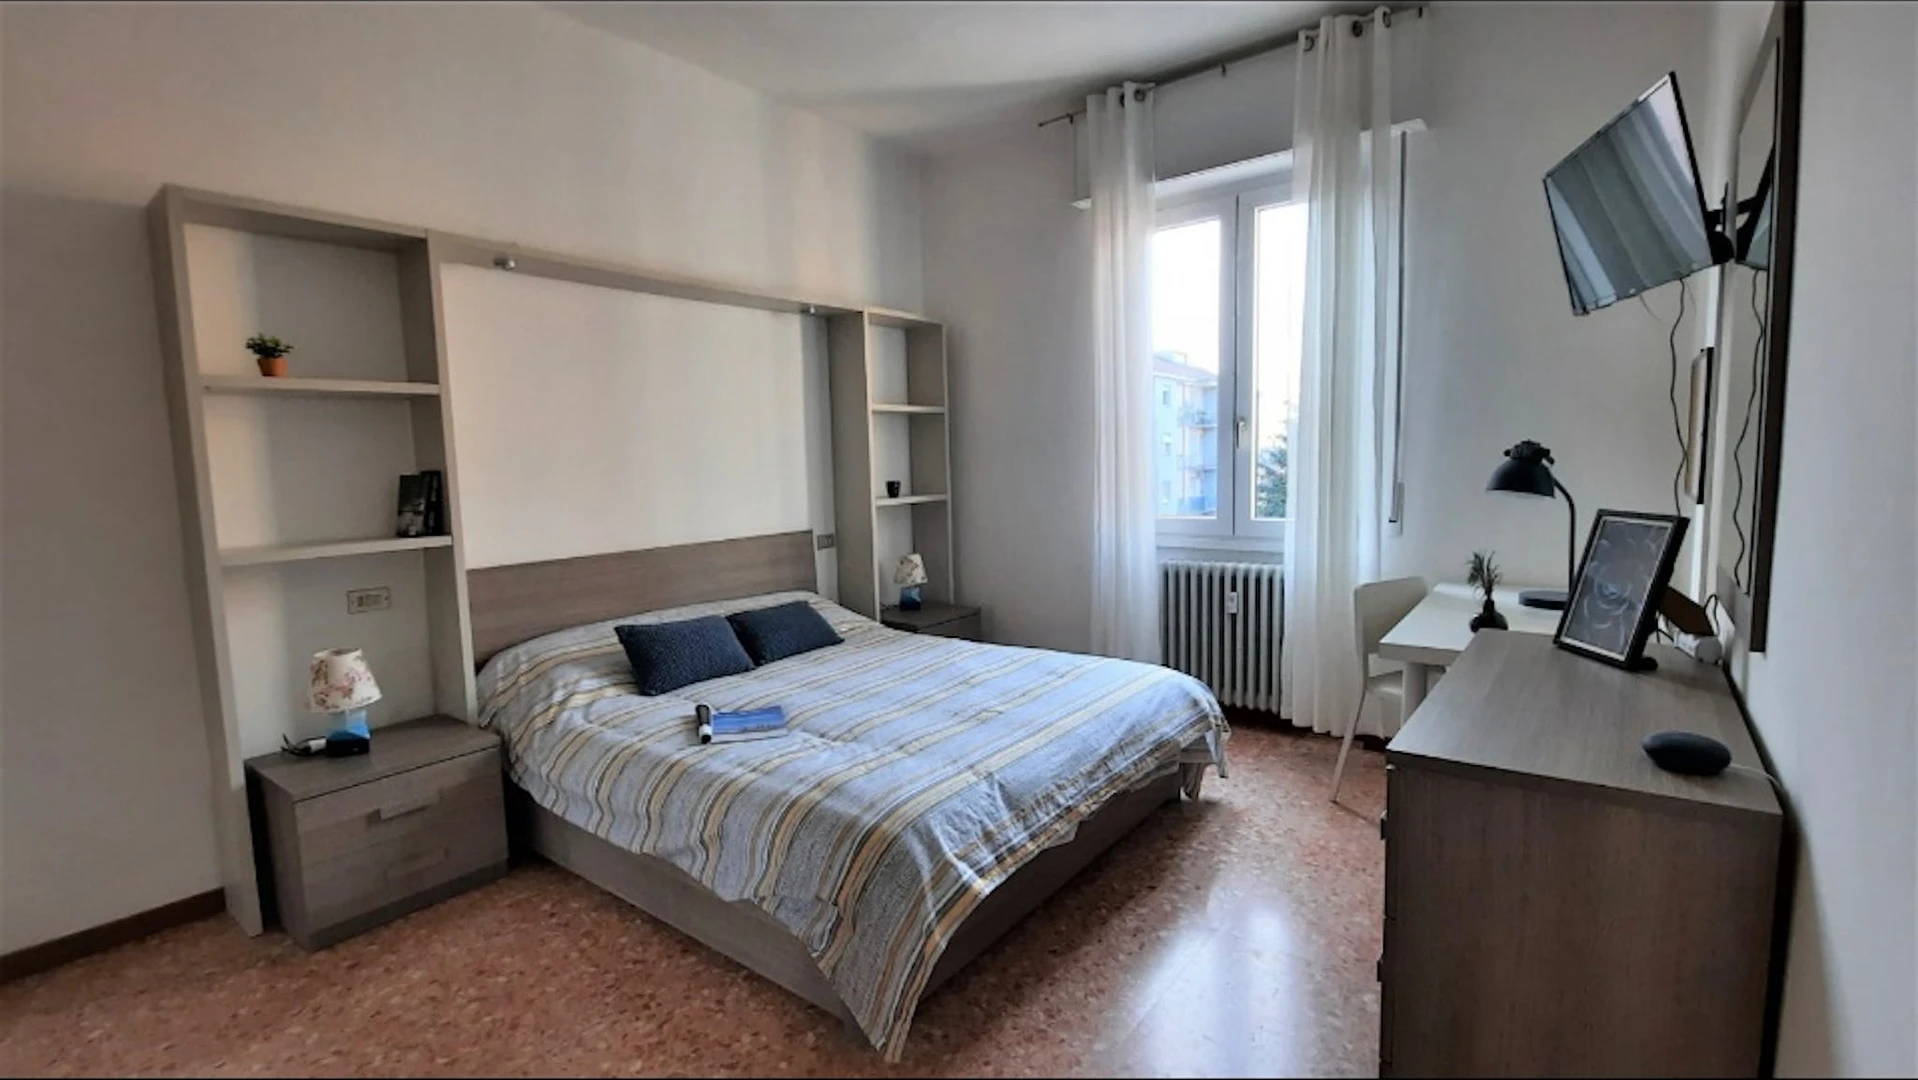 Bergamo de çift kişilik yataklı kiralık oda